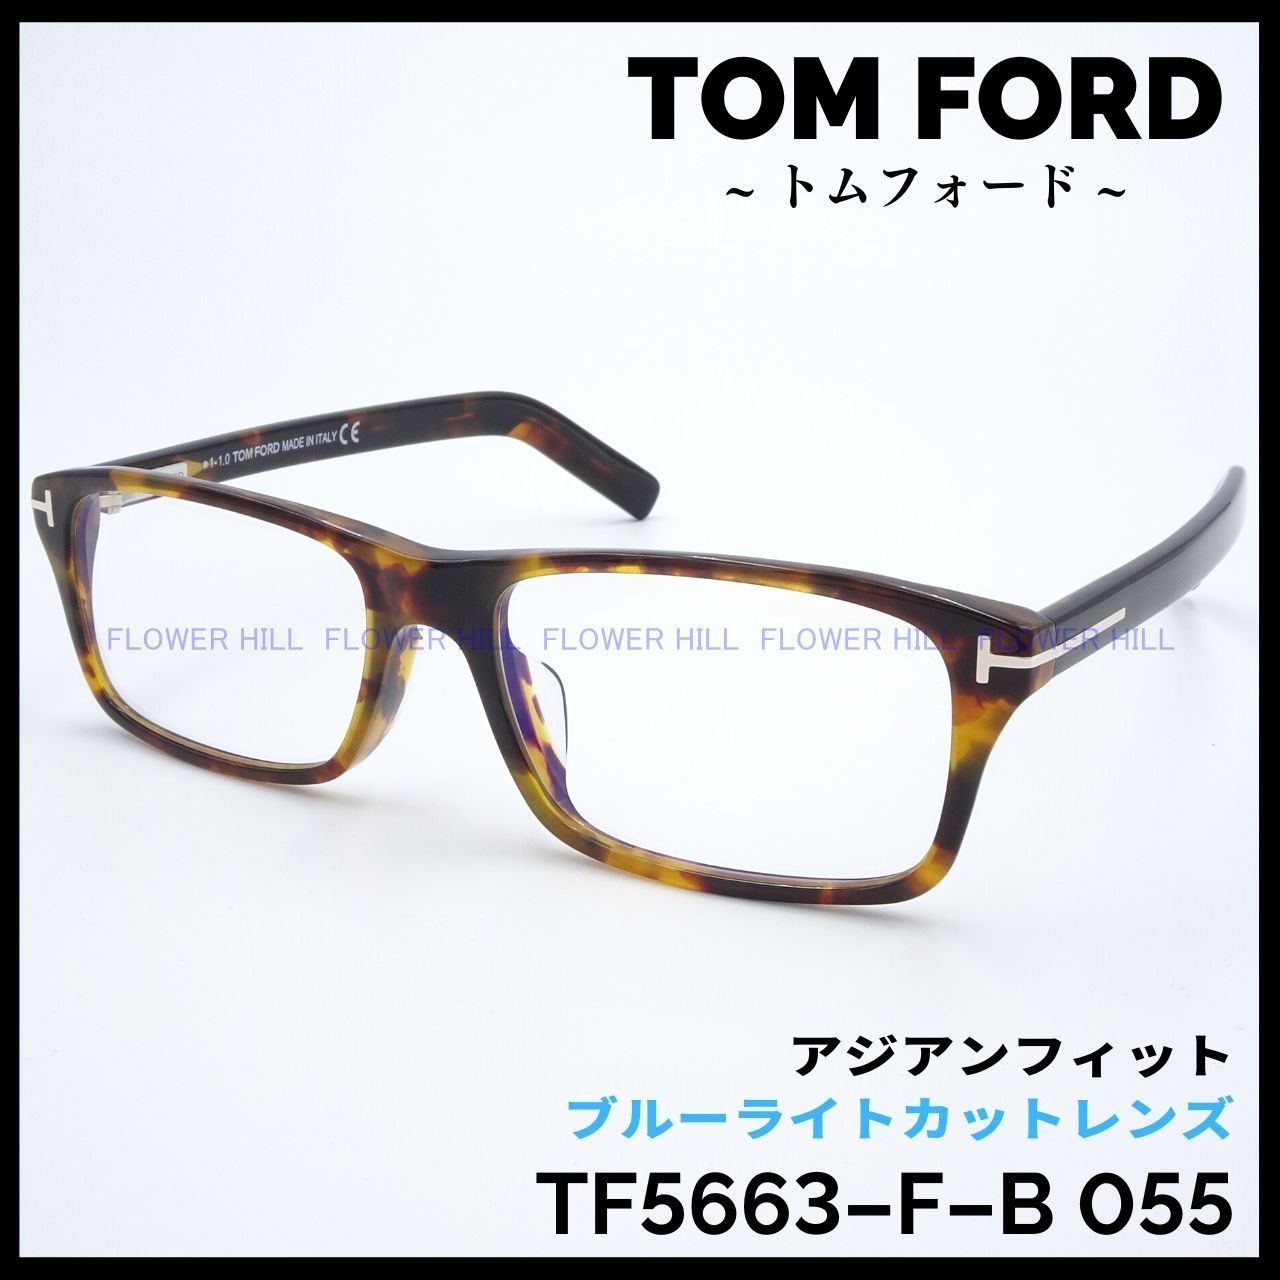 TOM FORD トムフォード メガネ TF5663-F-B 055 アジアンフィット スクエア ハバナ スクエア ブルーライトカットレンズ  イタリア製 メンズ レディース めがね 眼鏡